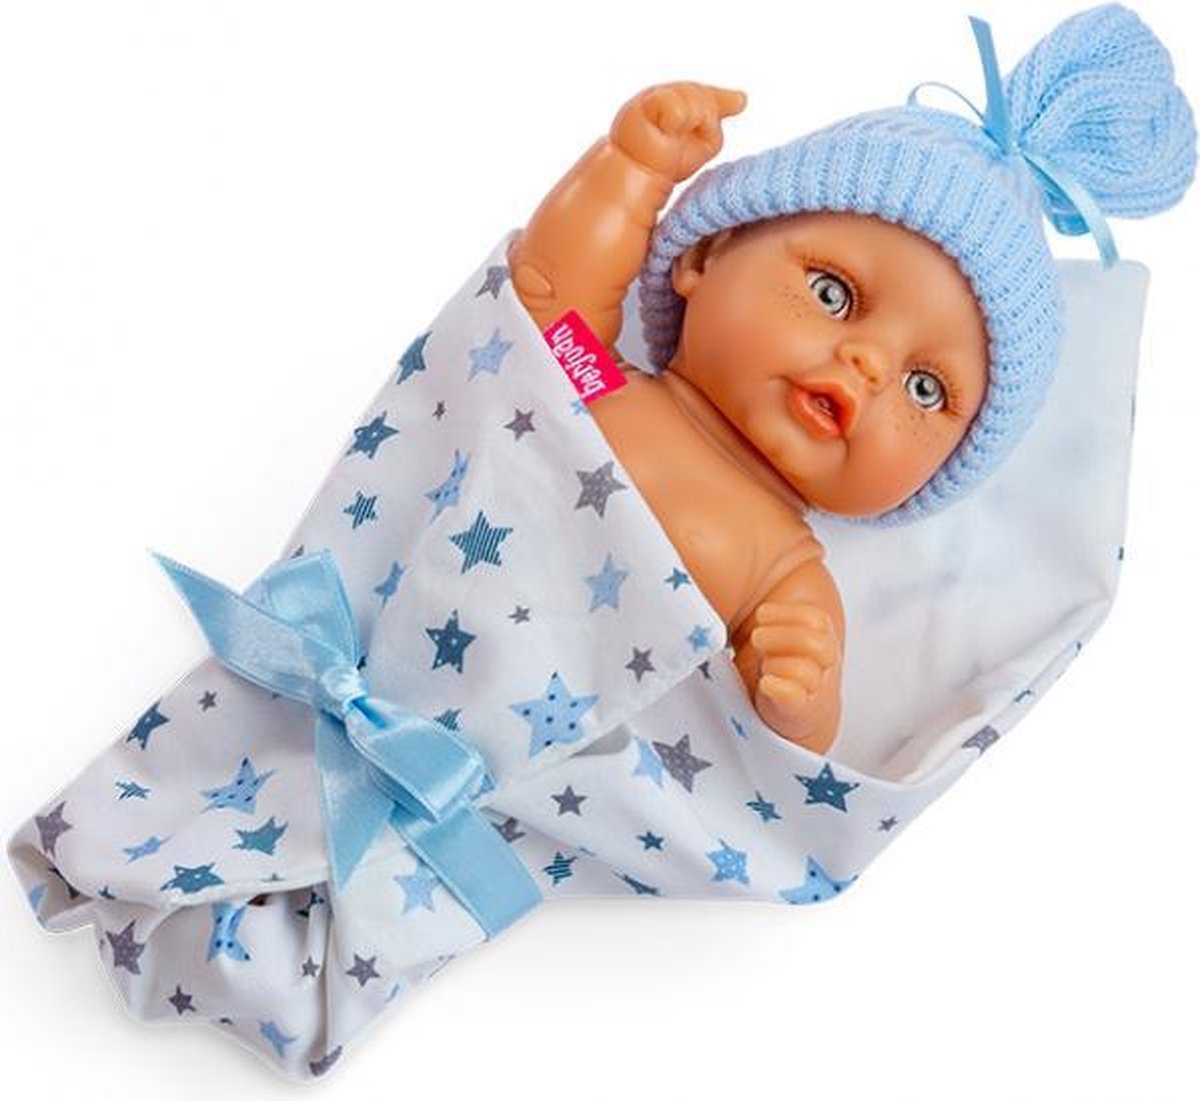 babypop met slaapzak meisjes 25 cm wit/blauw